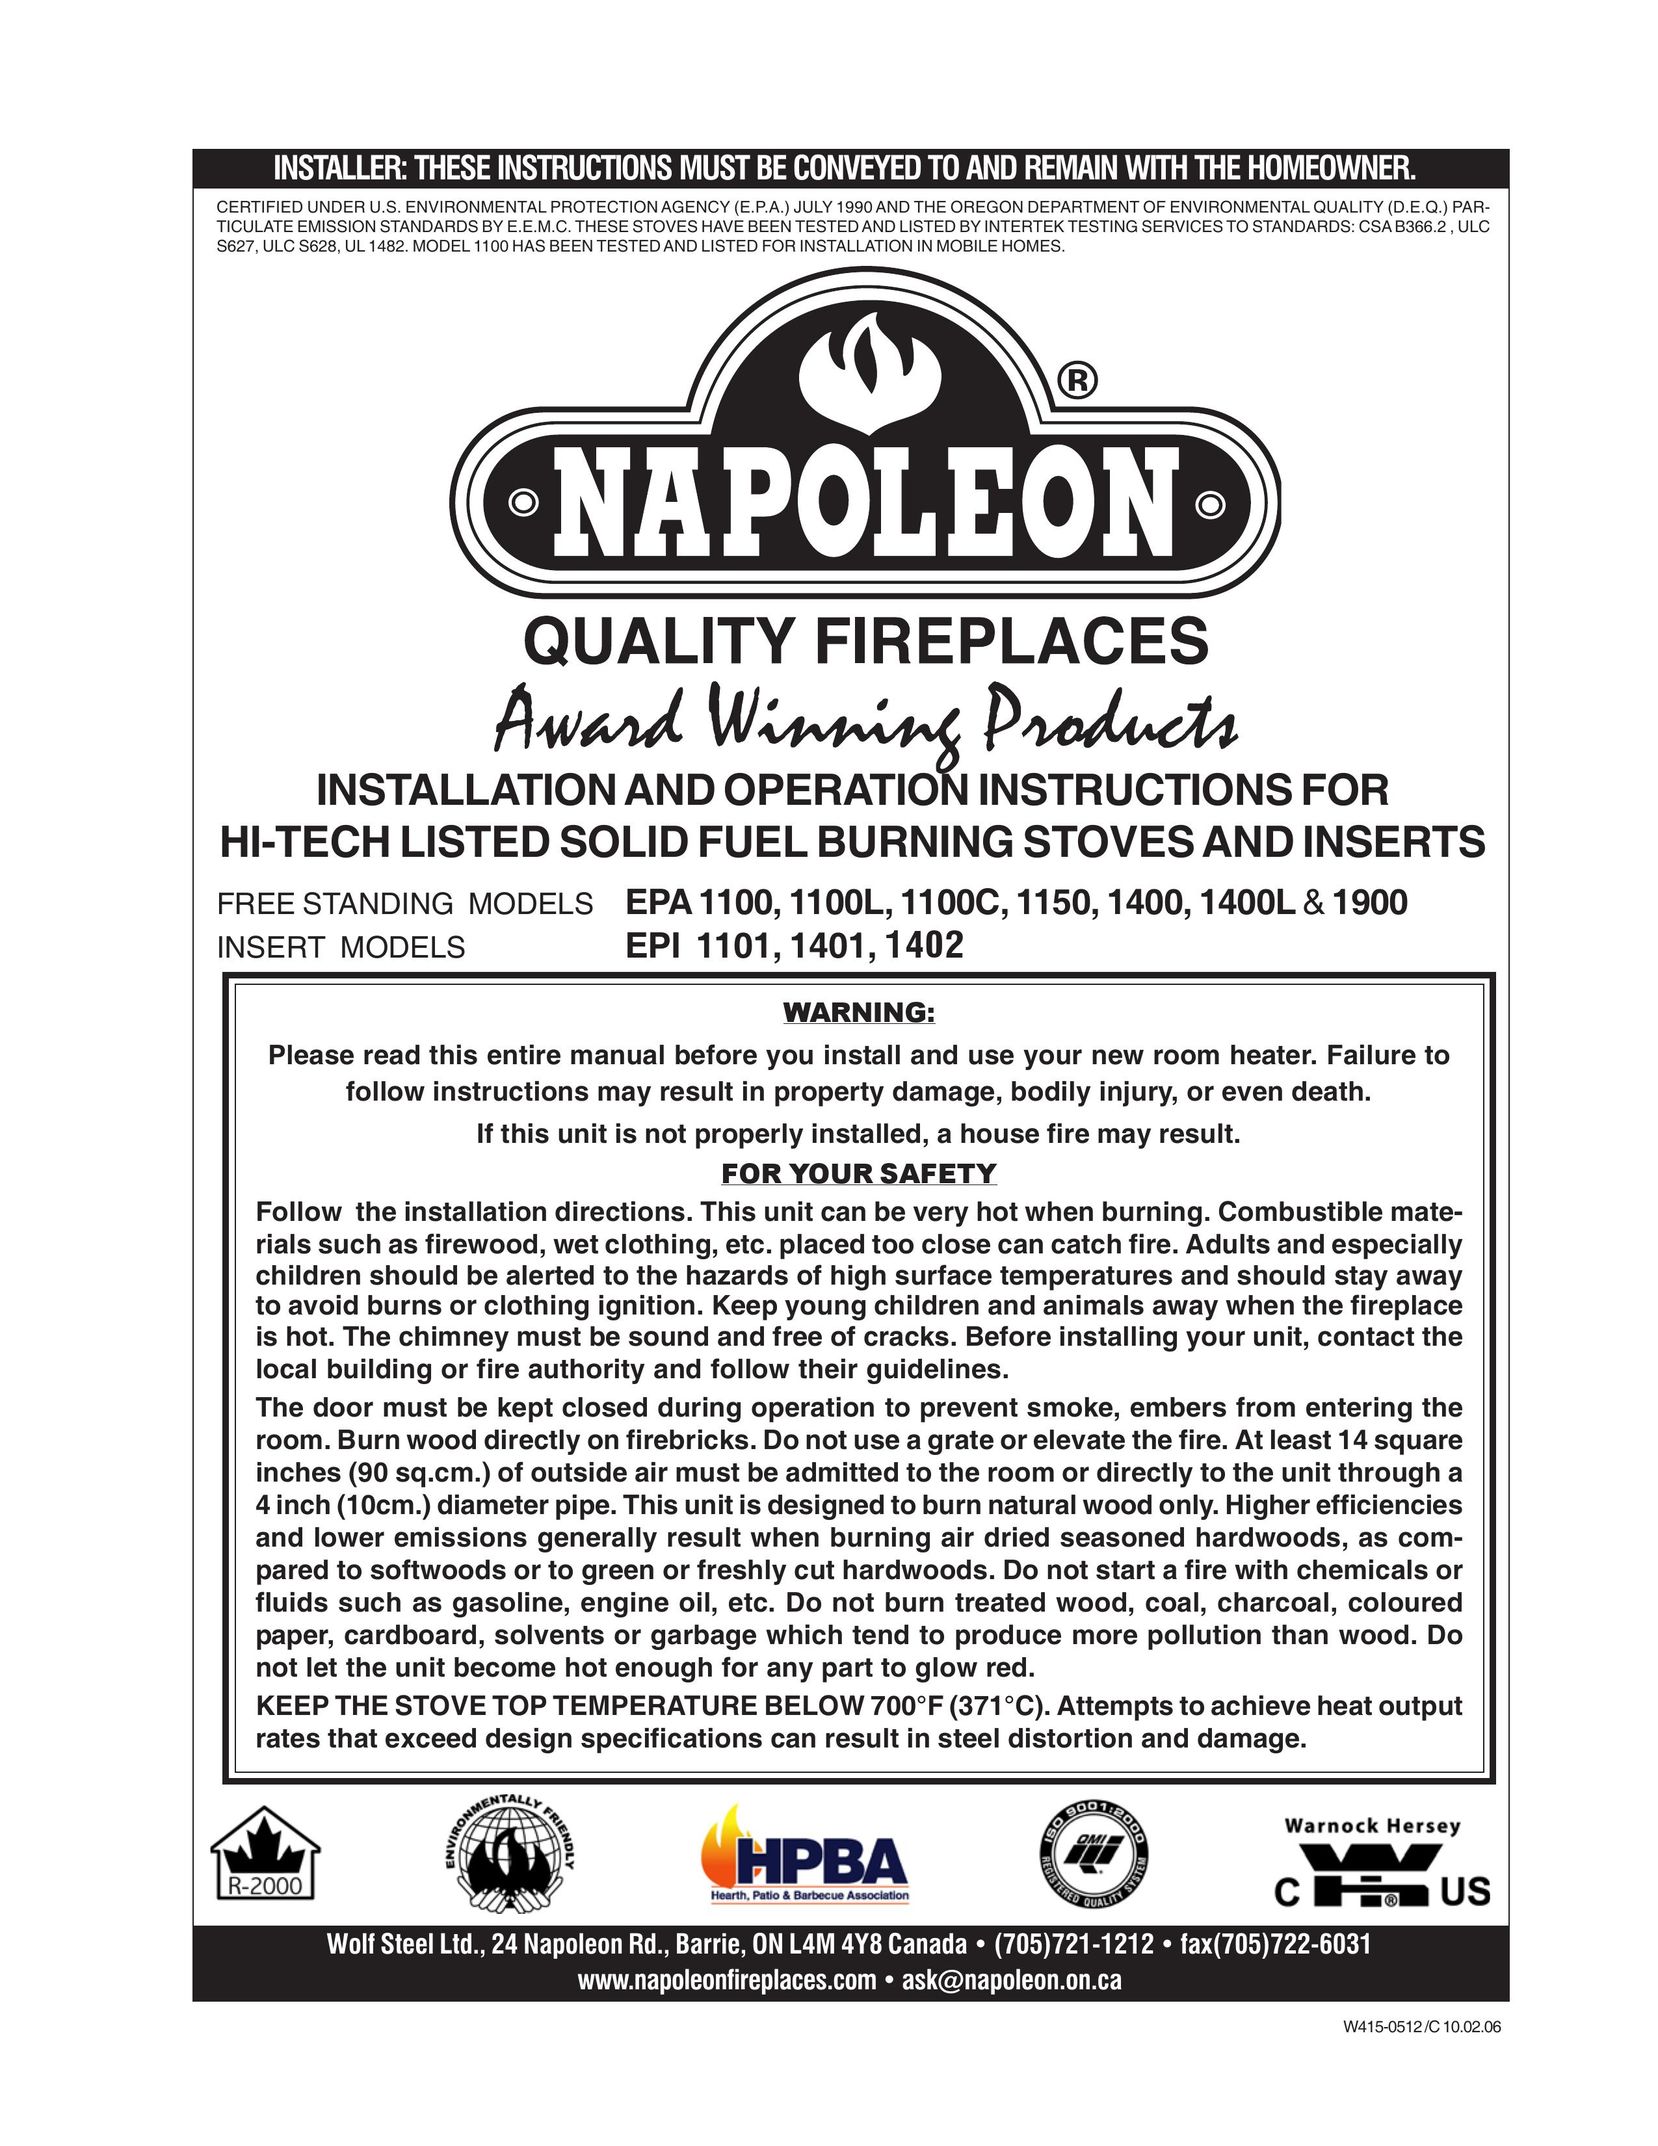 Napoleon Fireplaces EPA1400 Indoor Fireplace User Manual